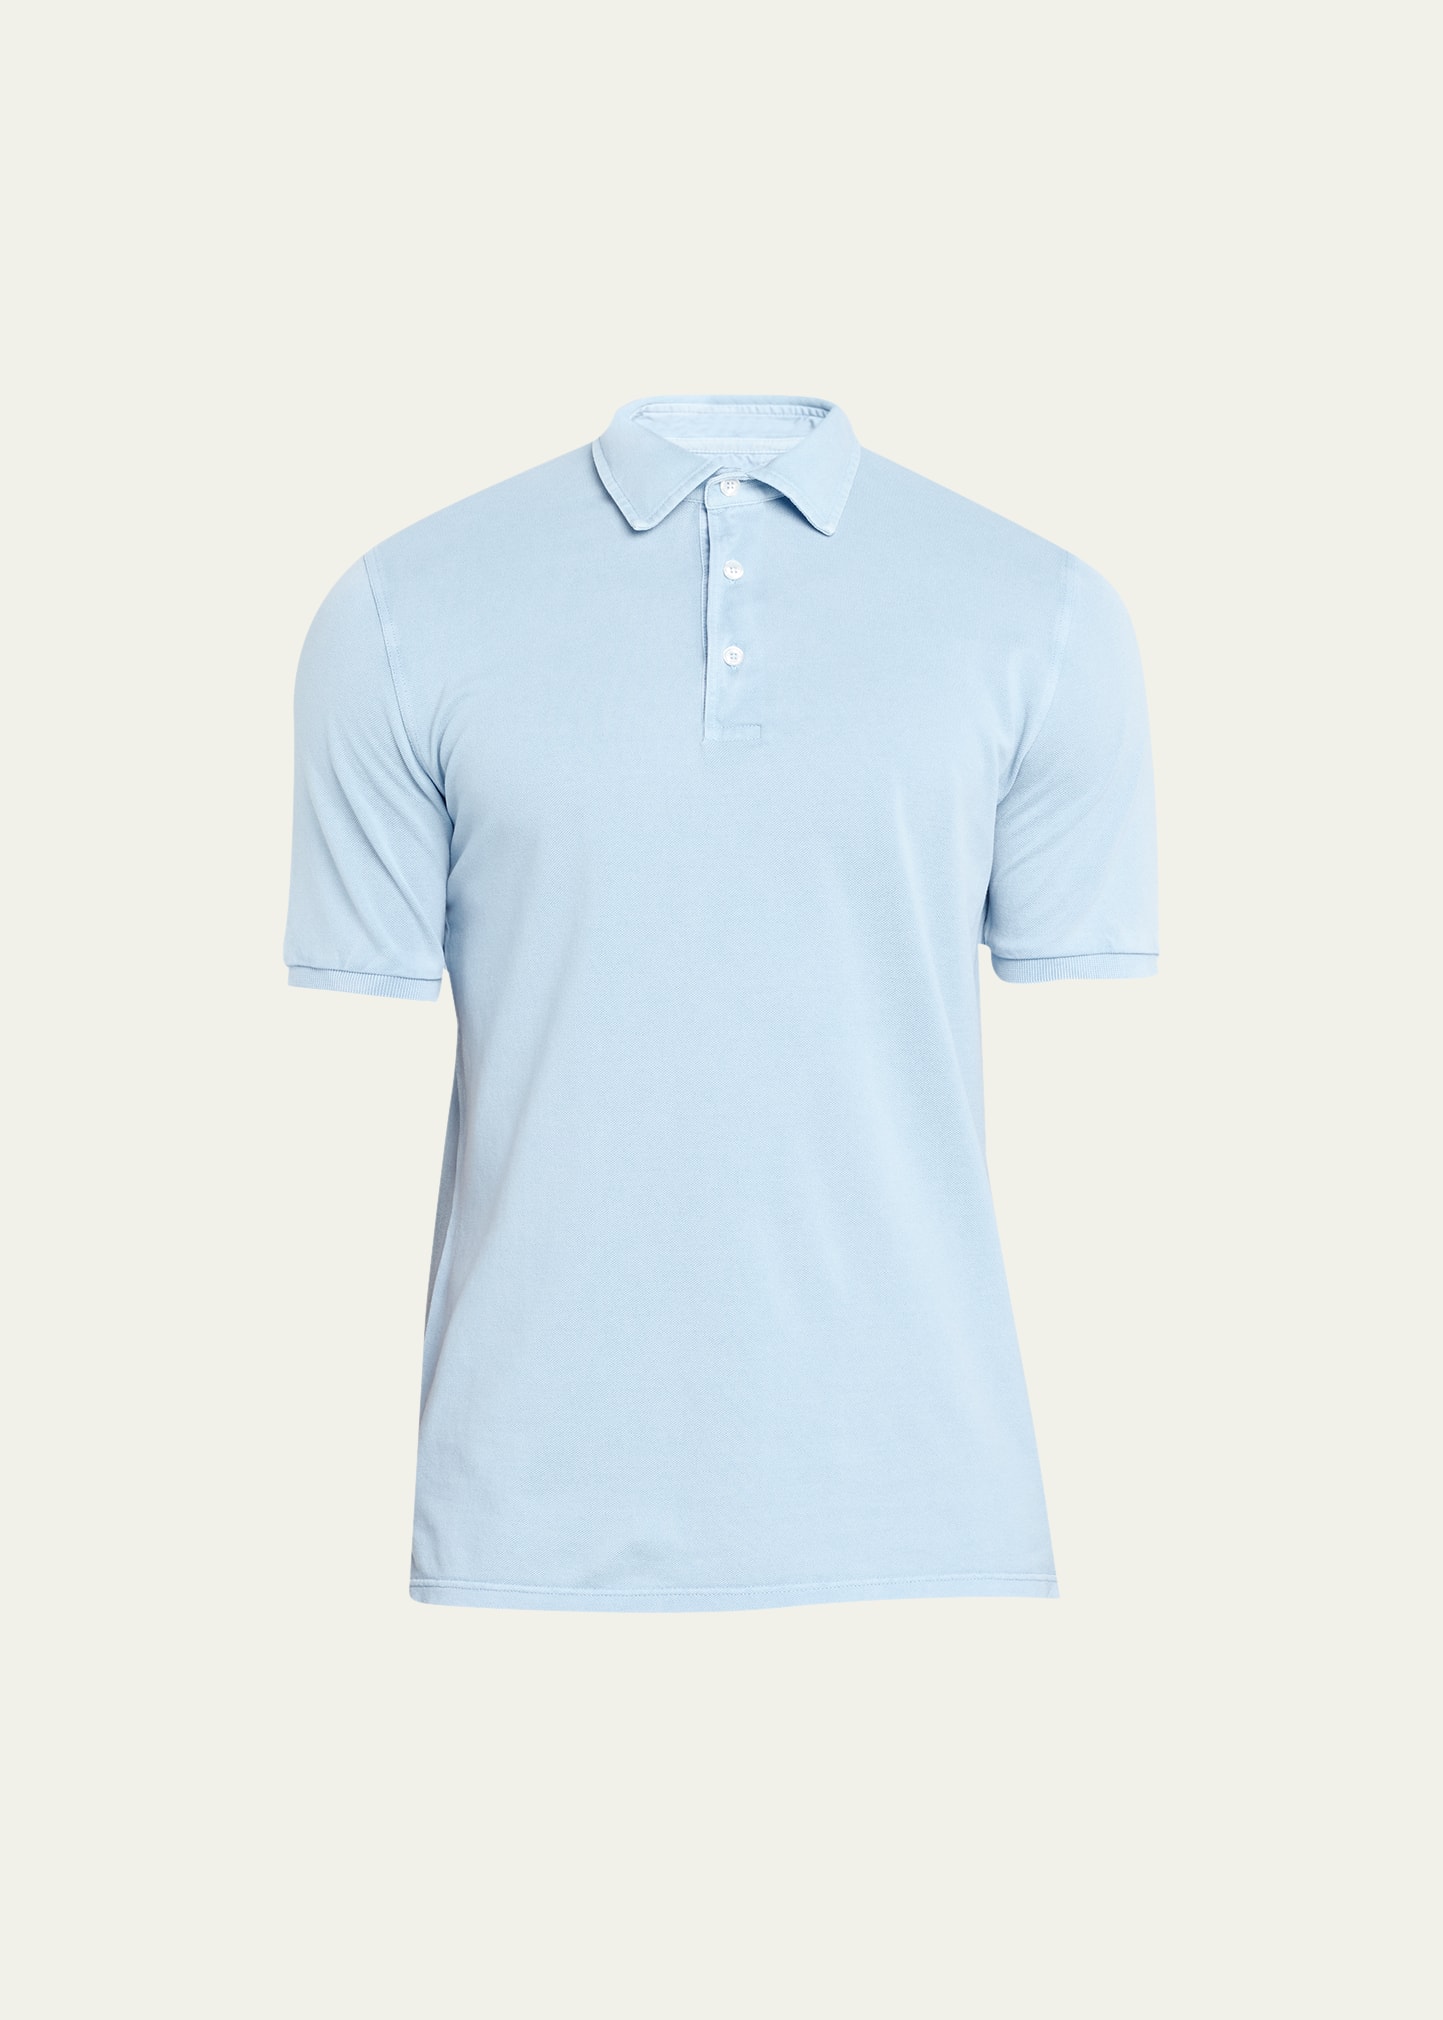 Fedeli Men's Cotton Pique Polo Shirt In Light Blue